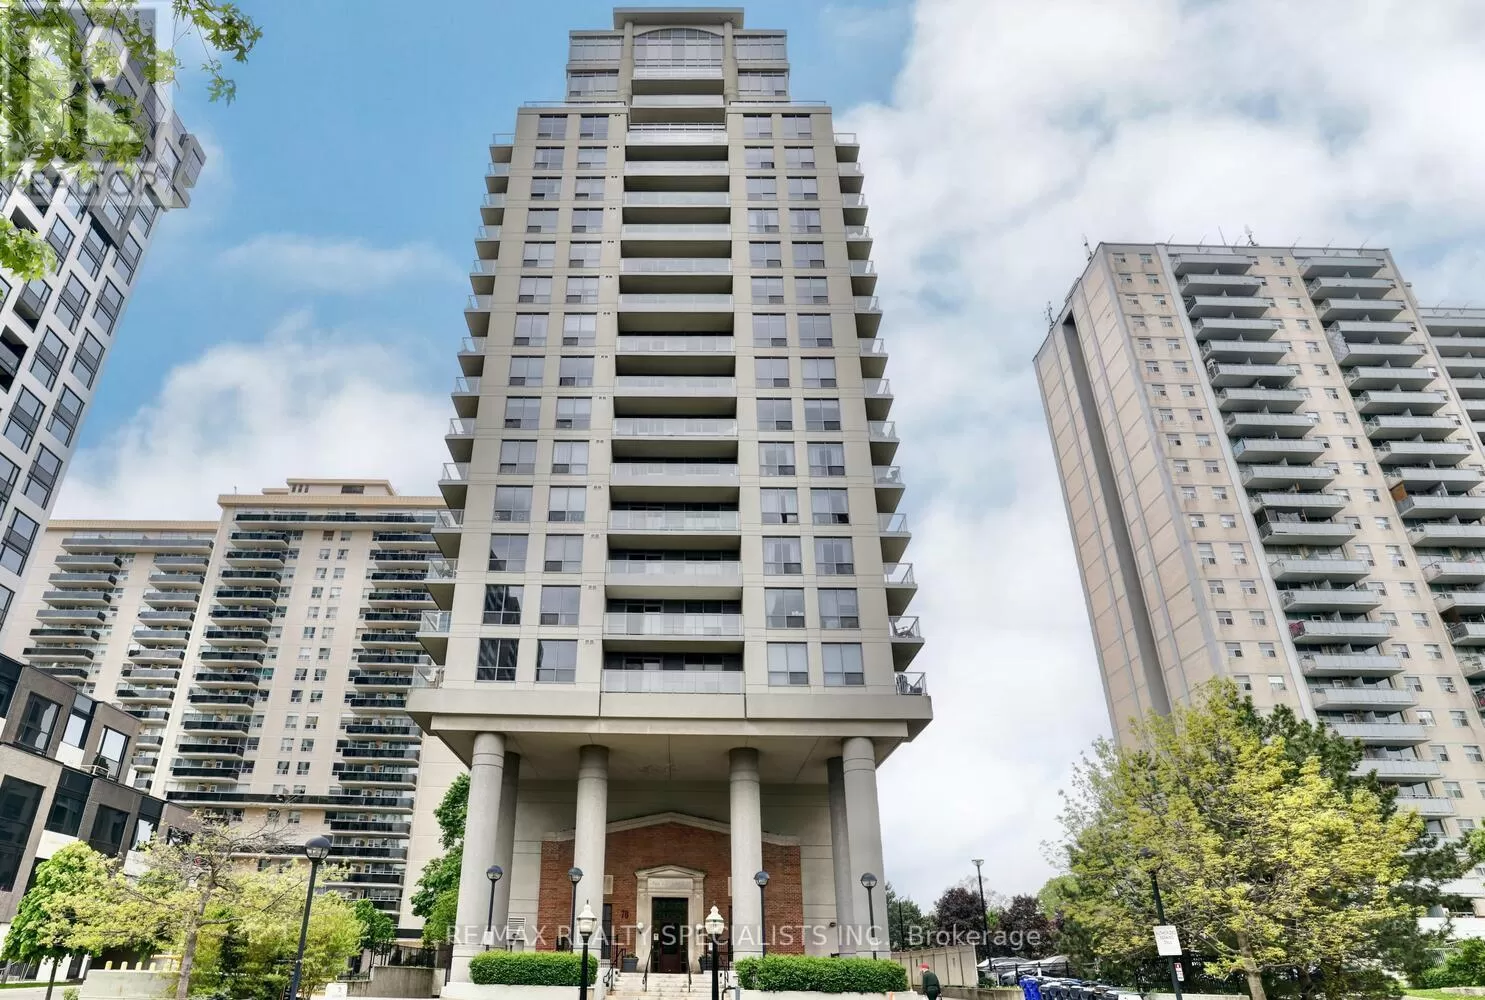 Apartment for rent: 1401 - 70 High Park Avenue, Toronto, Ontario M6P 1A1